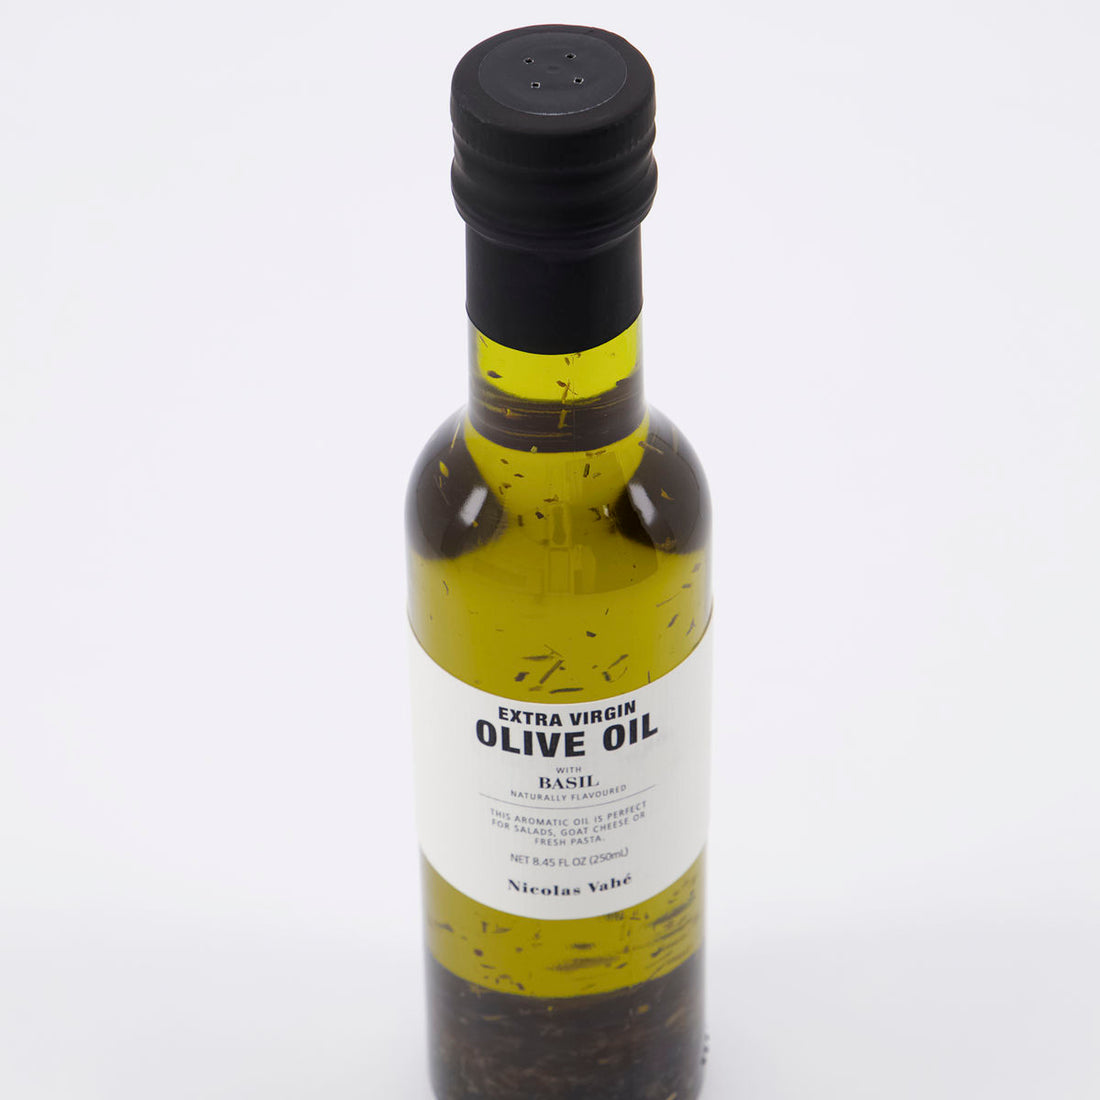 Nicolas Vahé Extra Virgin Olive Oil, with Basil